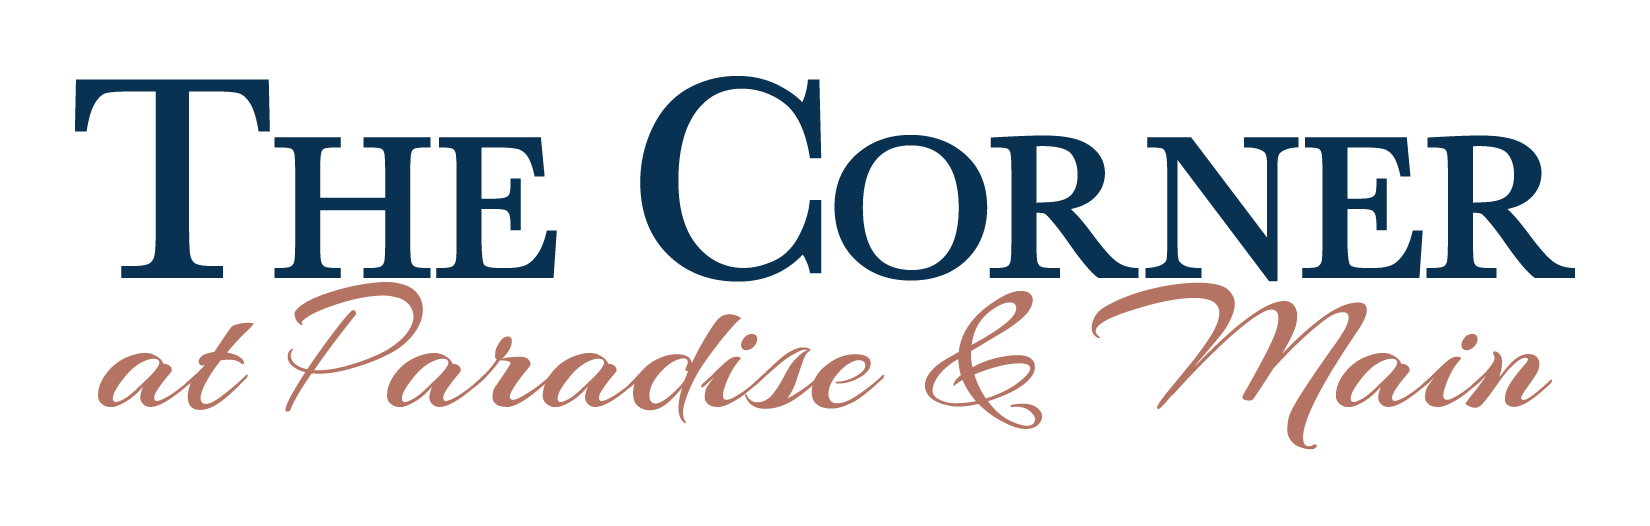 The Corner at Paradise and Main – The Corner at Paradise & Main